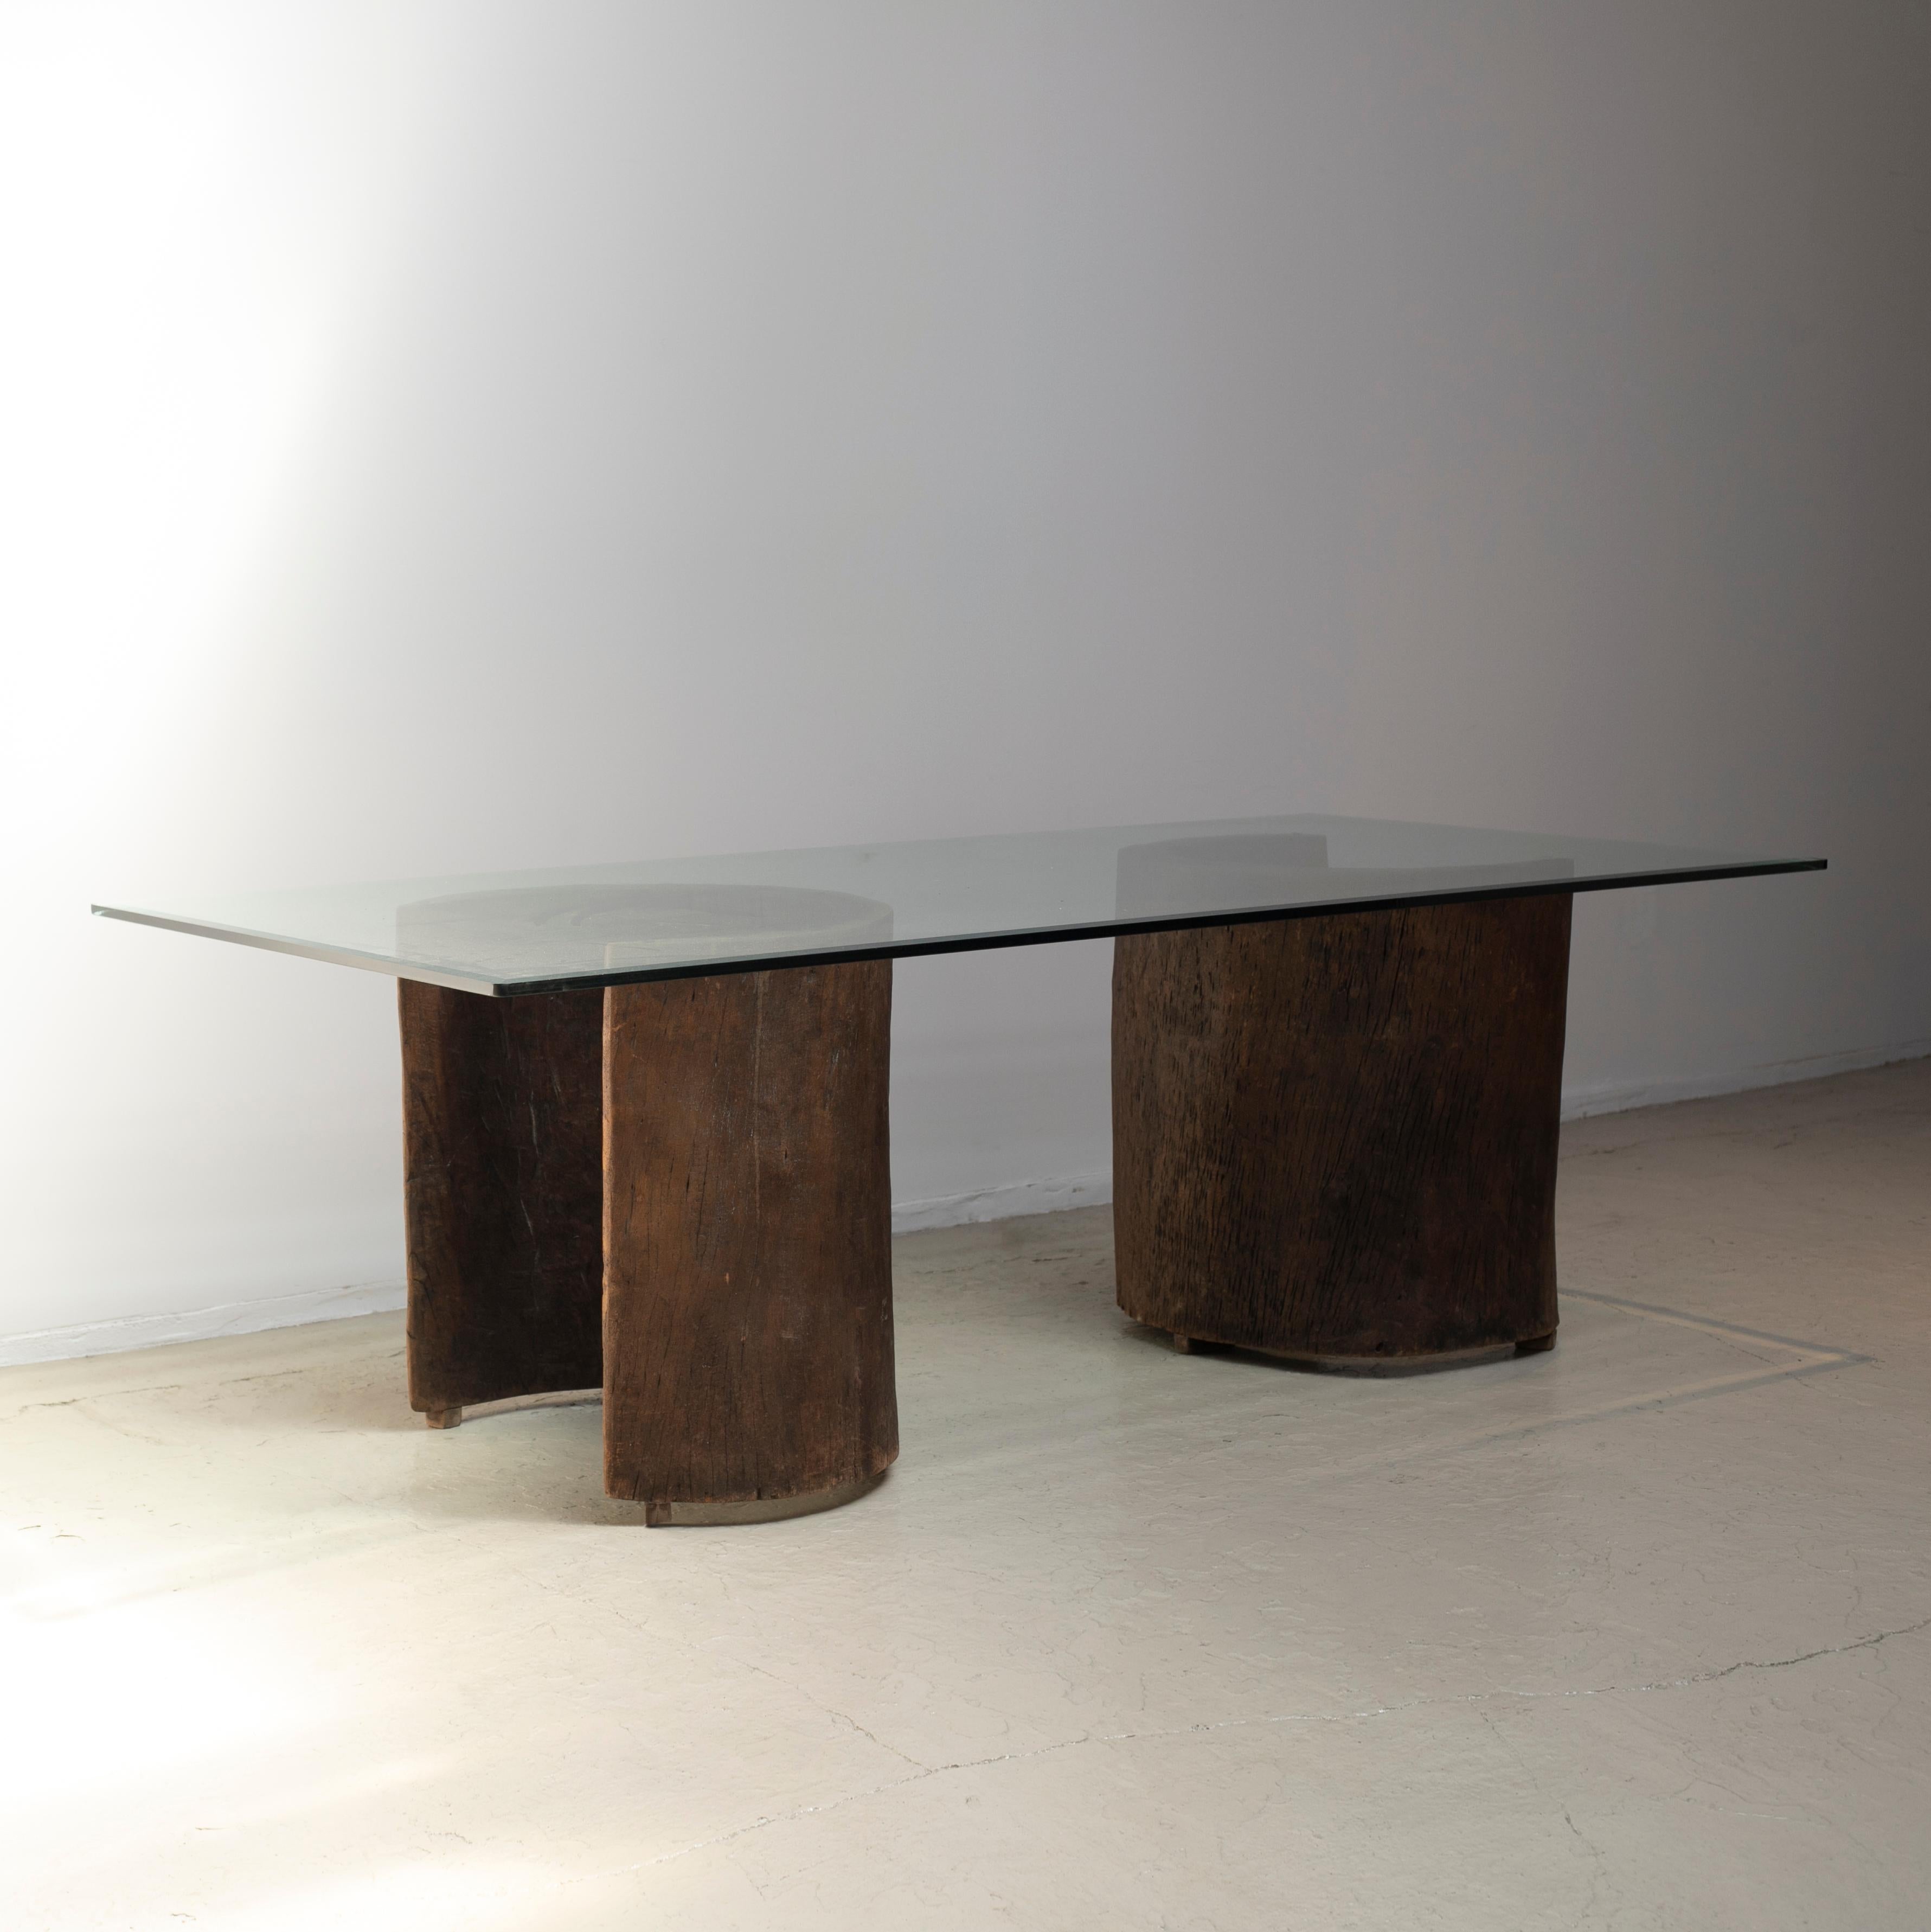 Table de salle à manger conçue par José Zanine Caldas dans les années 1970.
Le plateau en verre d'origine et les pieds en bois massif brésilien.
Cet individu a été exposé lors de l'exposition 